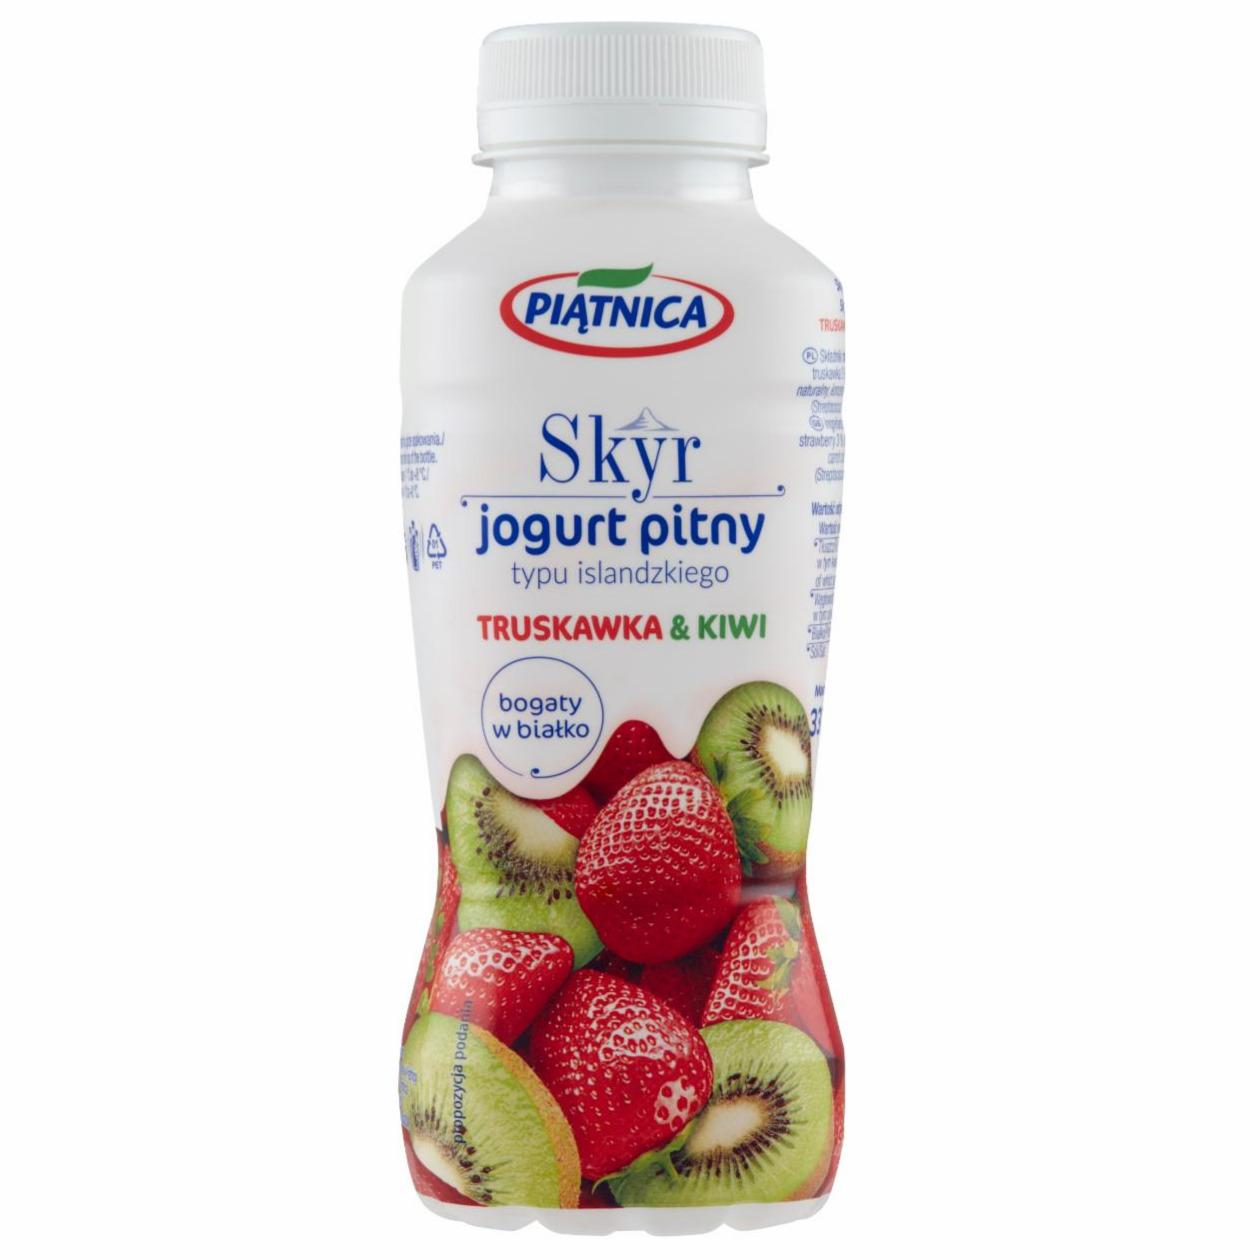 Zdjęcia - Skyr jogurt pitny truskawka & kiwi Piątnica